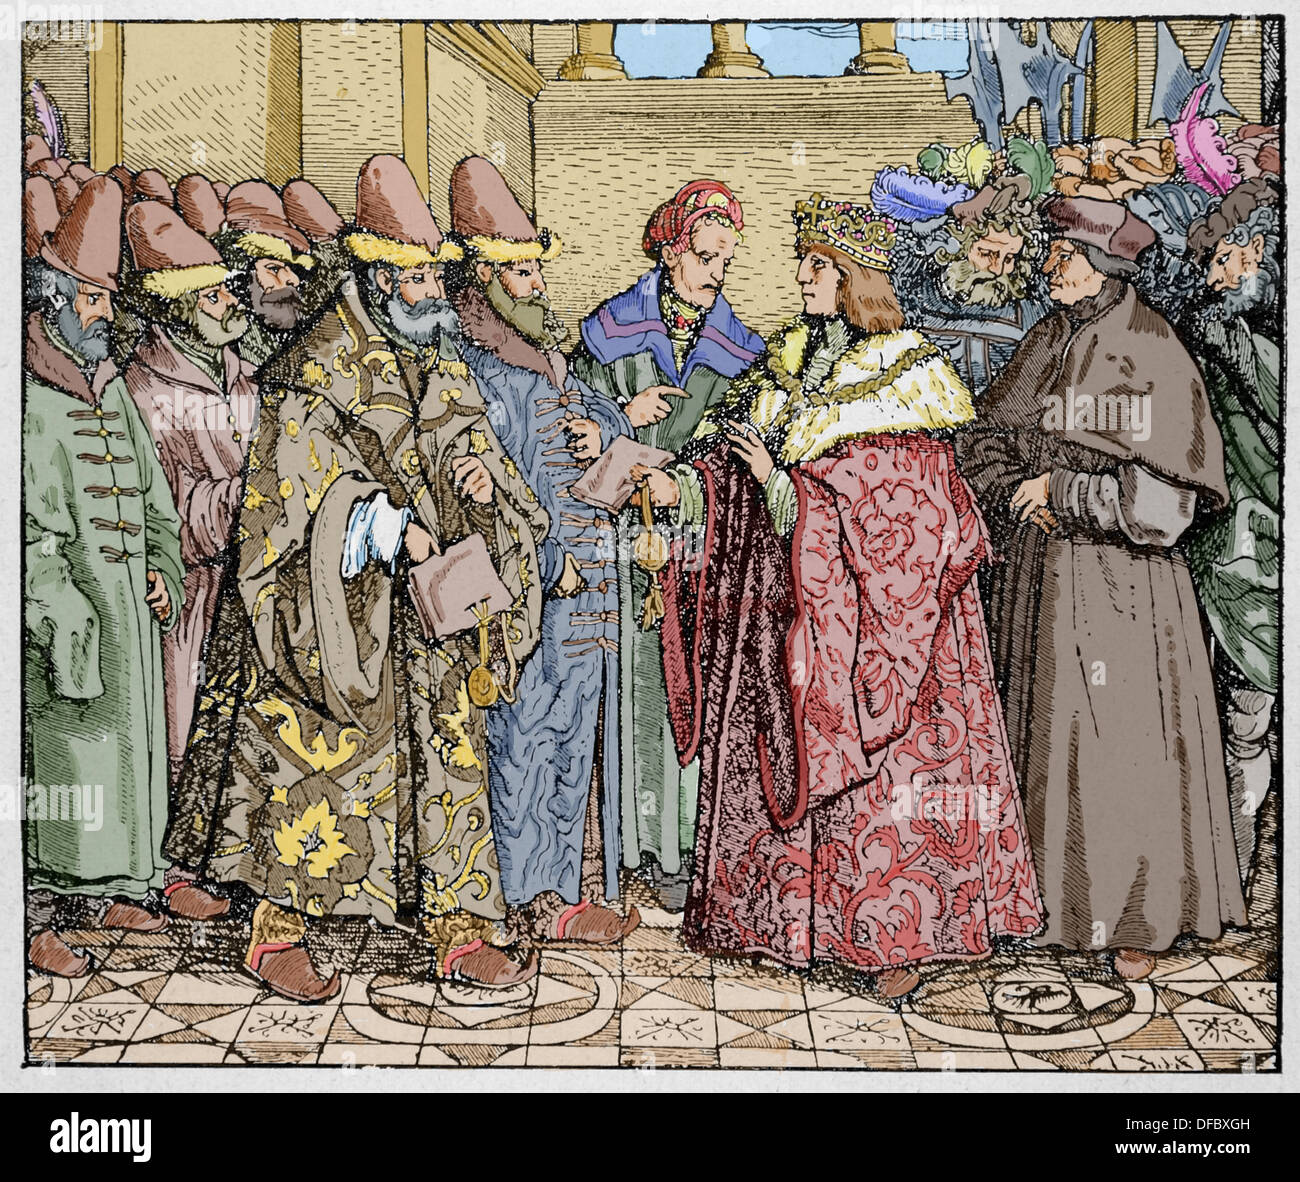 Massimiliano I del Sacro Romano Imperatore riceve, all'Ambasciata russa del Gran Principe di Mosca, Vasily III. Incisione colorata. Foto Stock